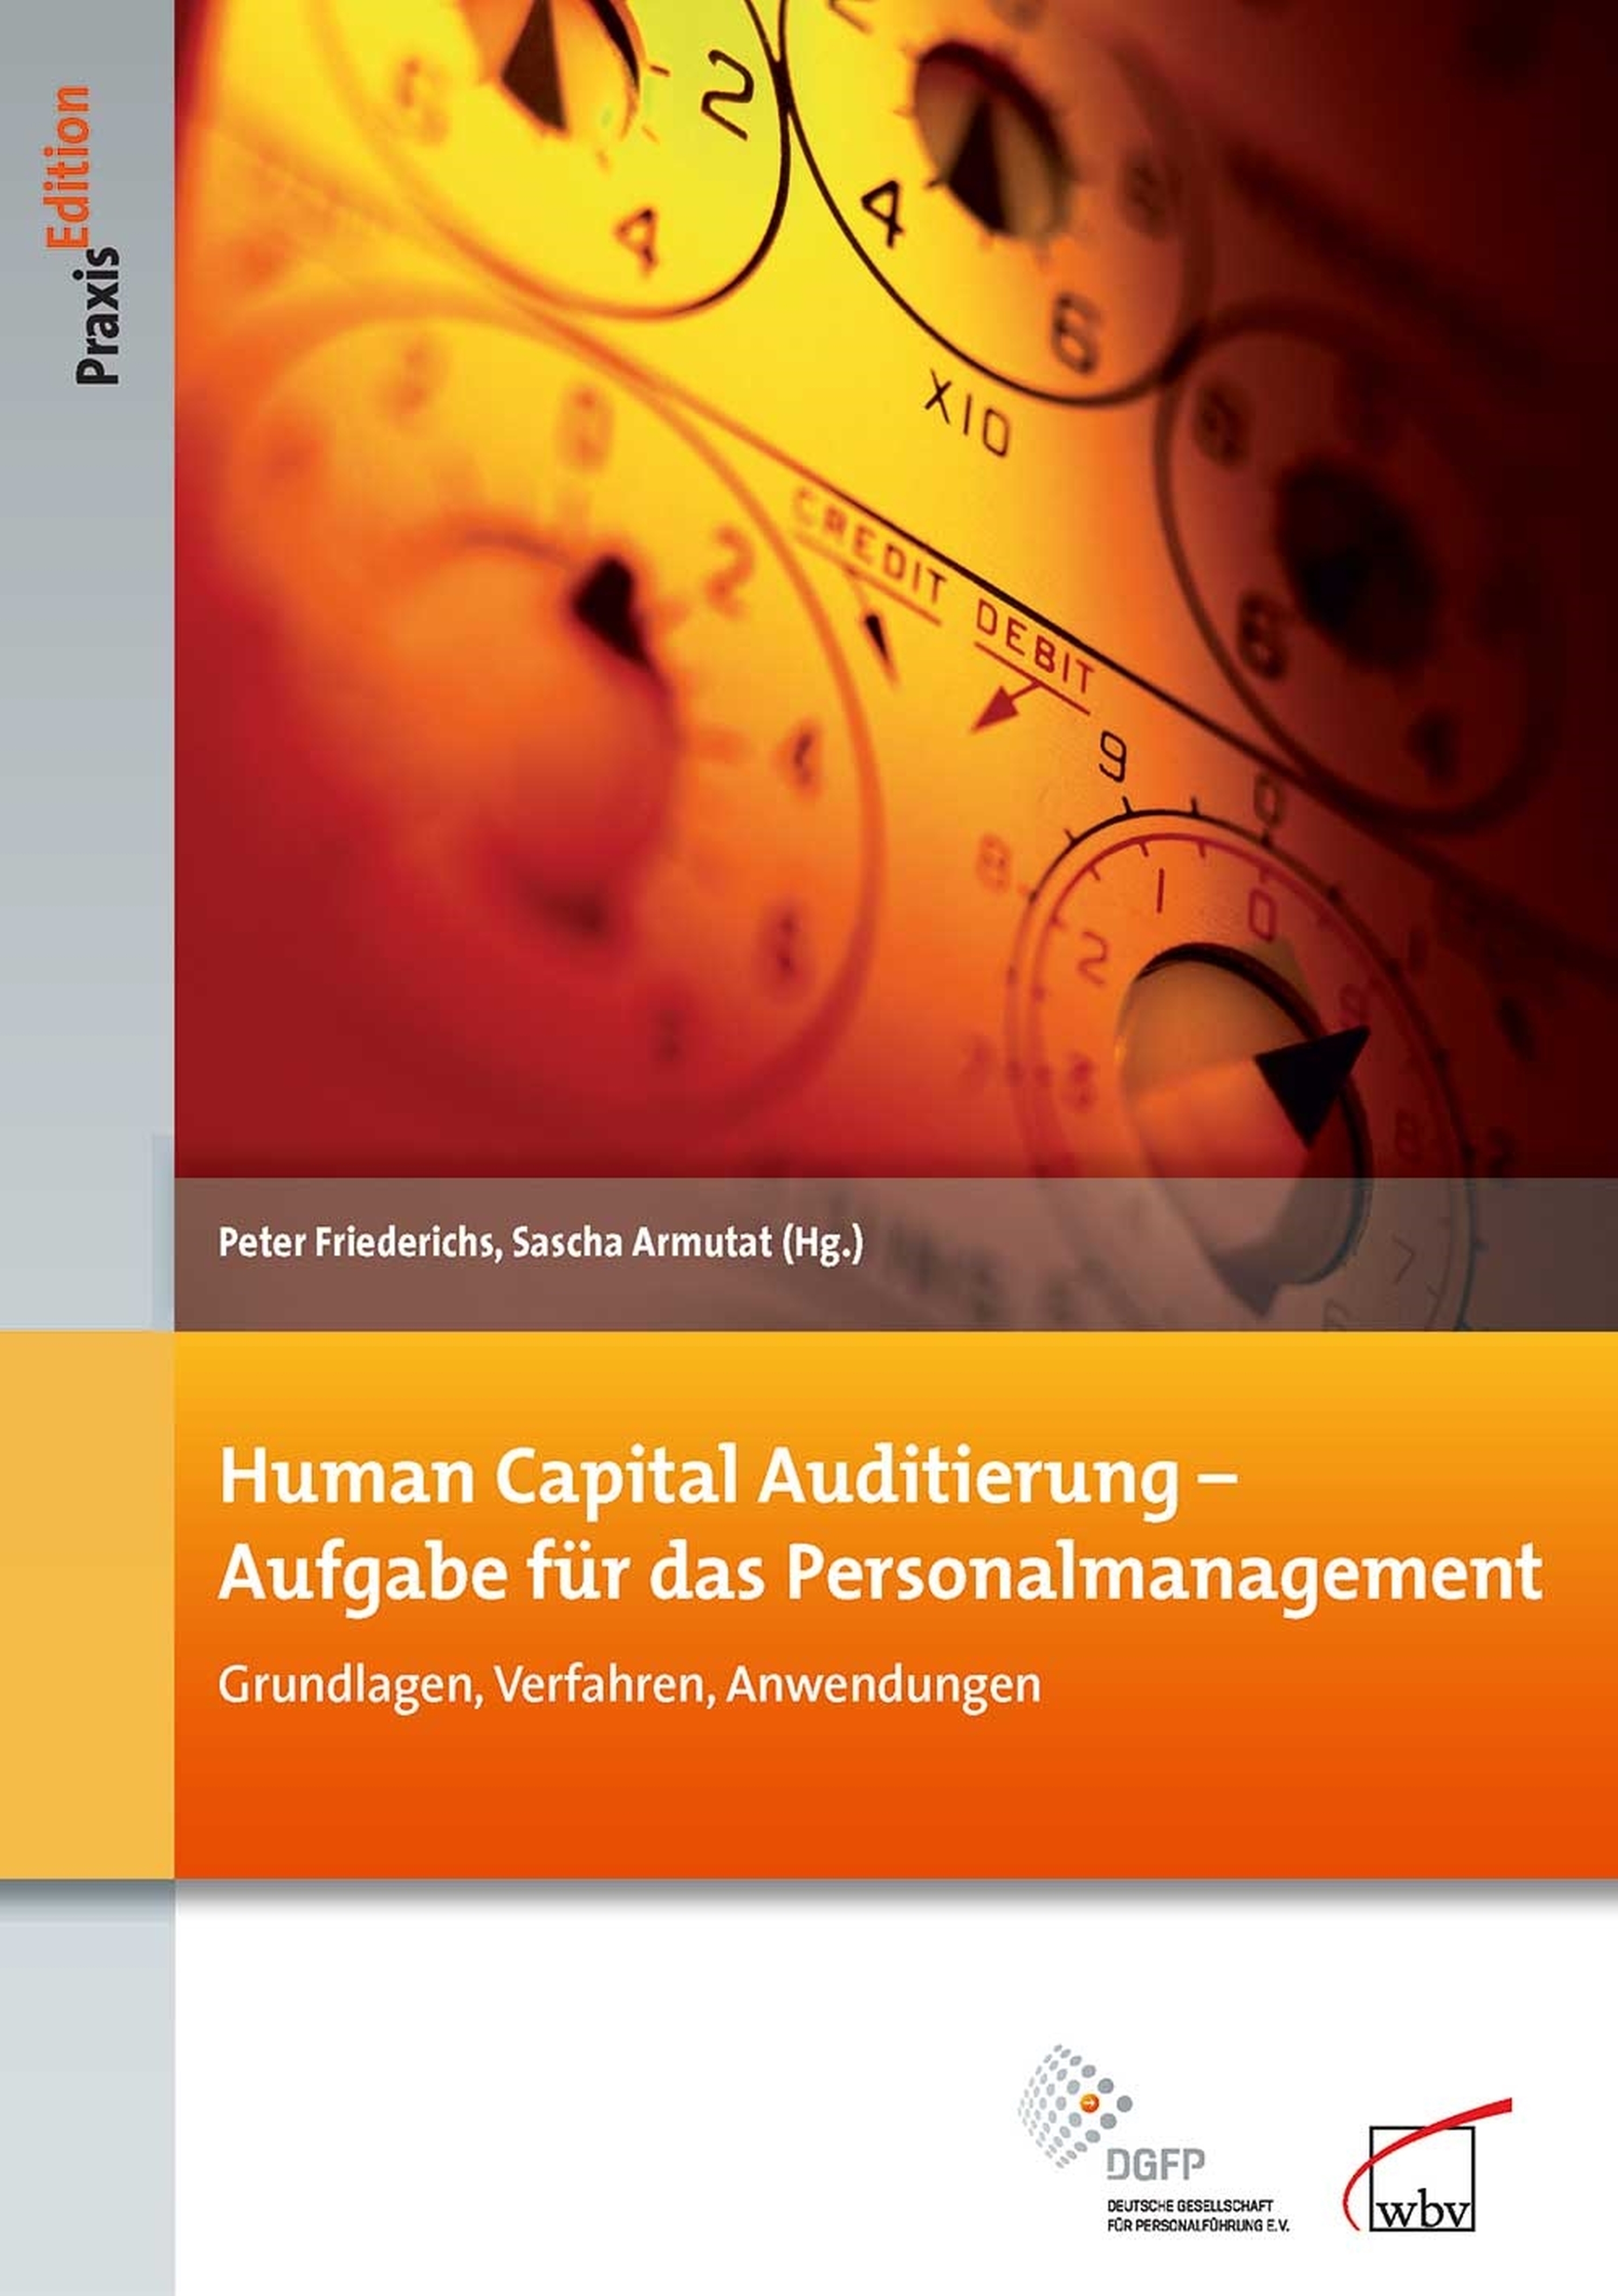 Human Capital Auditierung - Aufgabe für das Personalmanagement